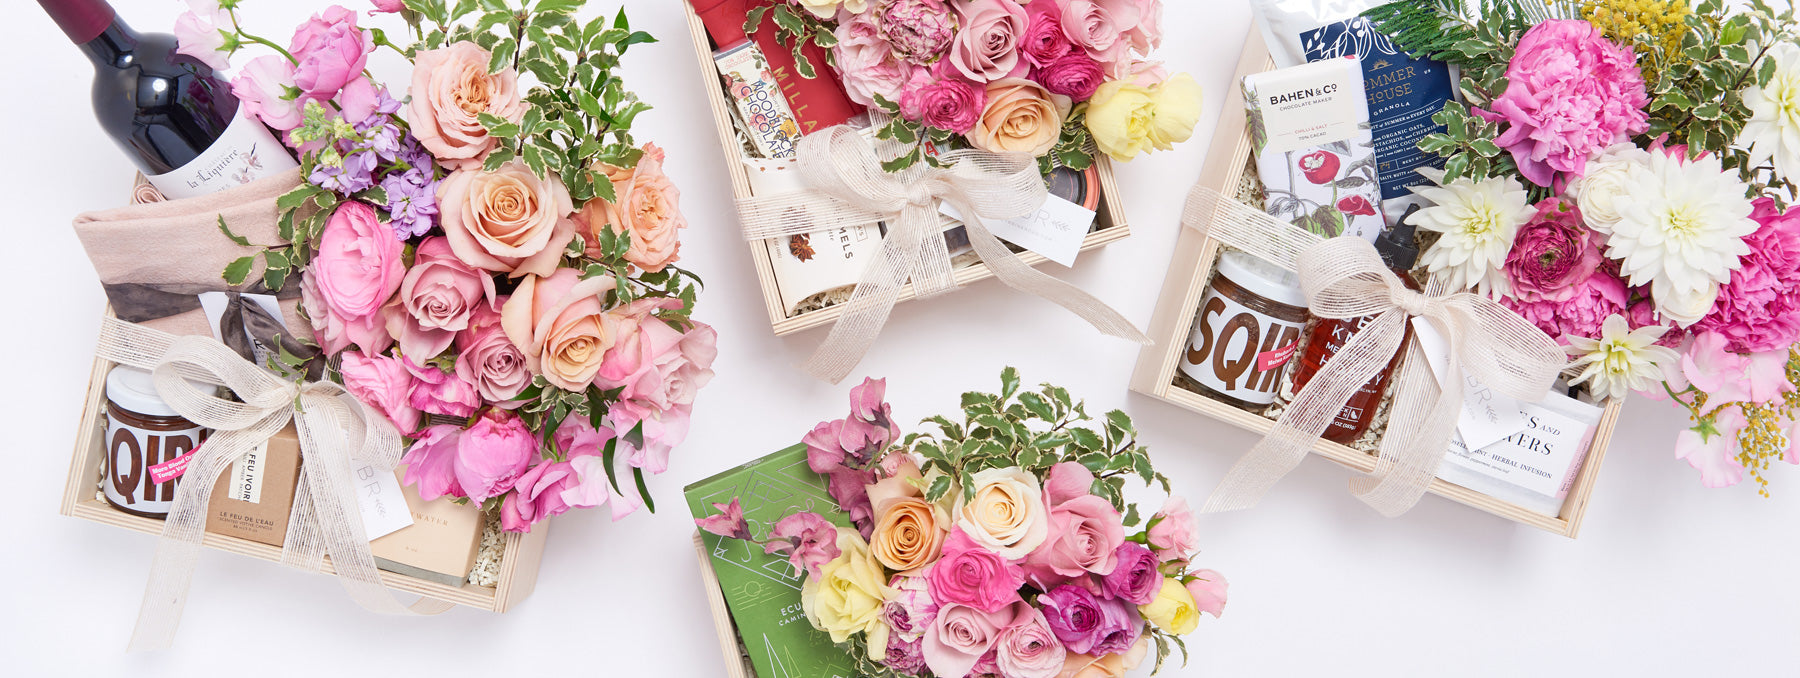 Floral Arrangement Gift Boxes